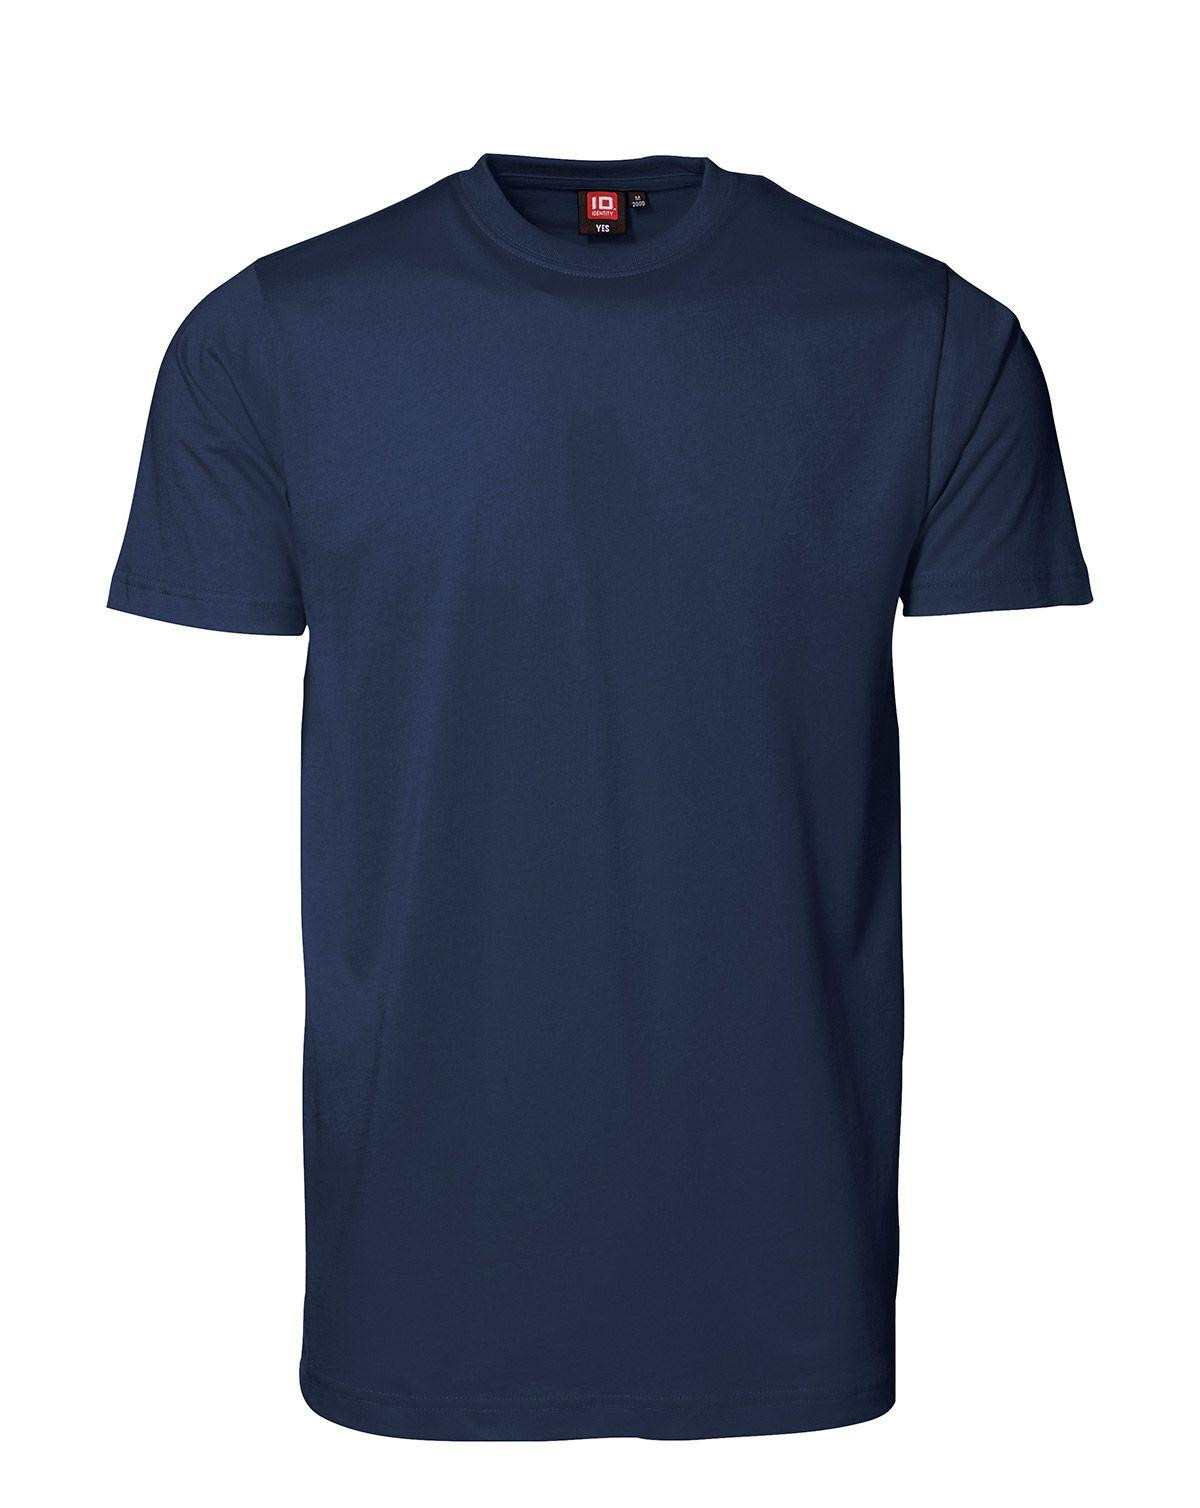 ID YES T-shirt (Navy, 3XL)